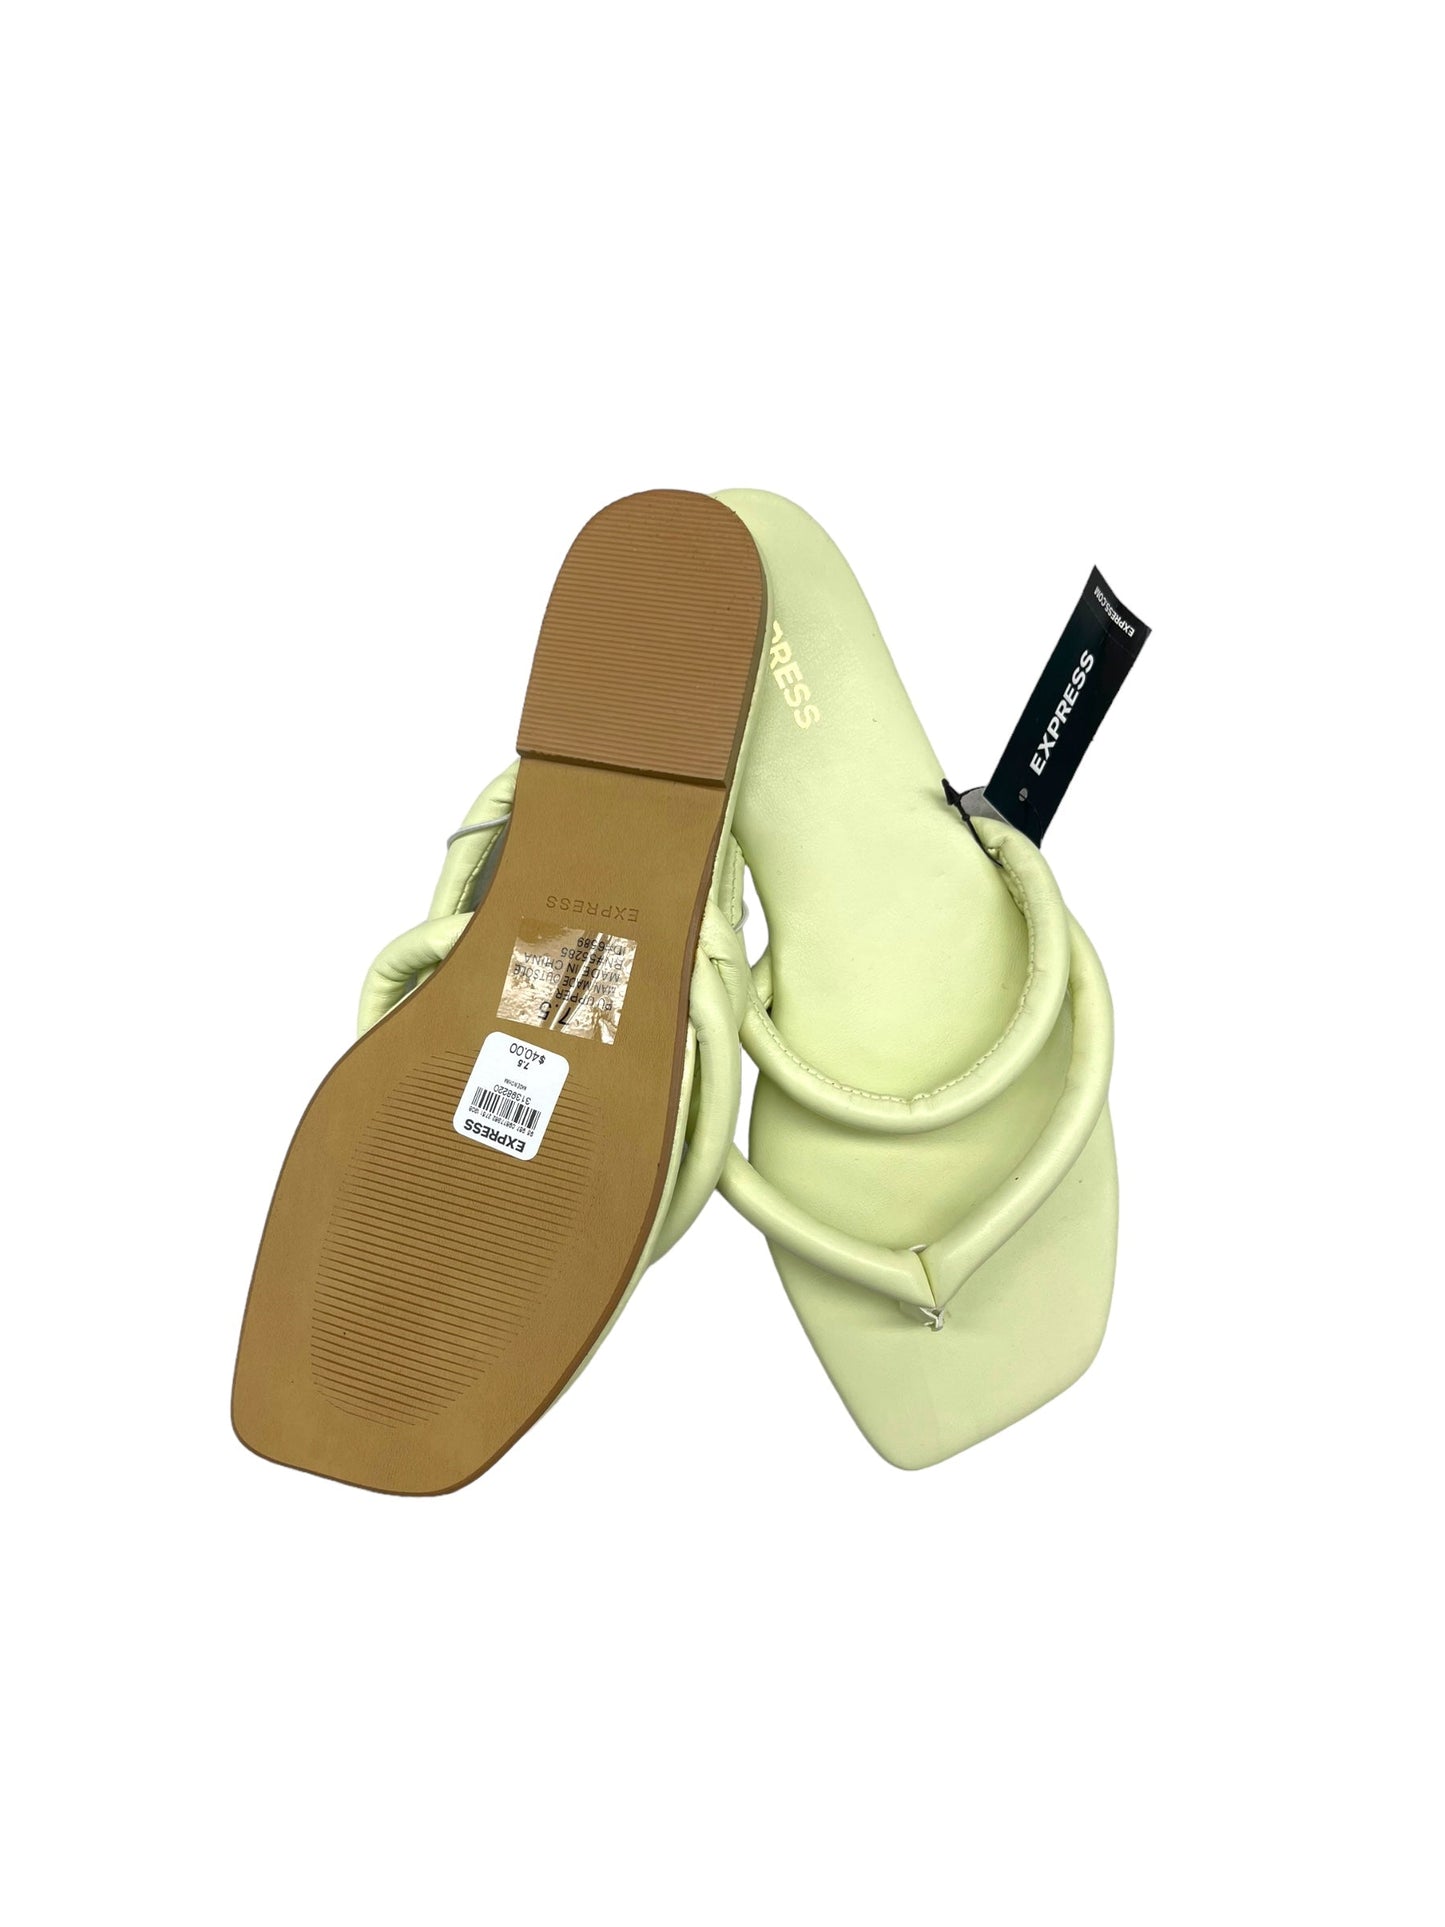 Yellow Sandals Flip Flops Express, Size 7.5